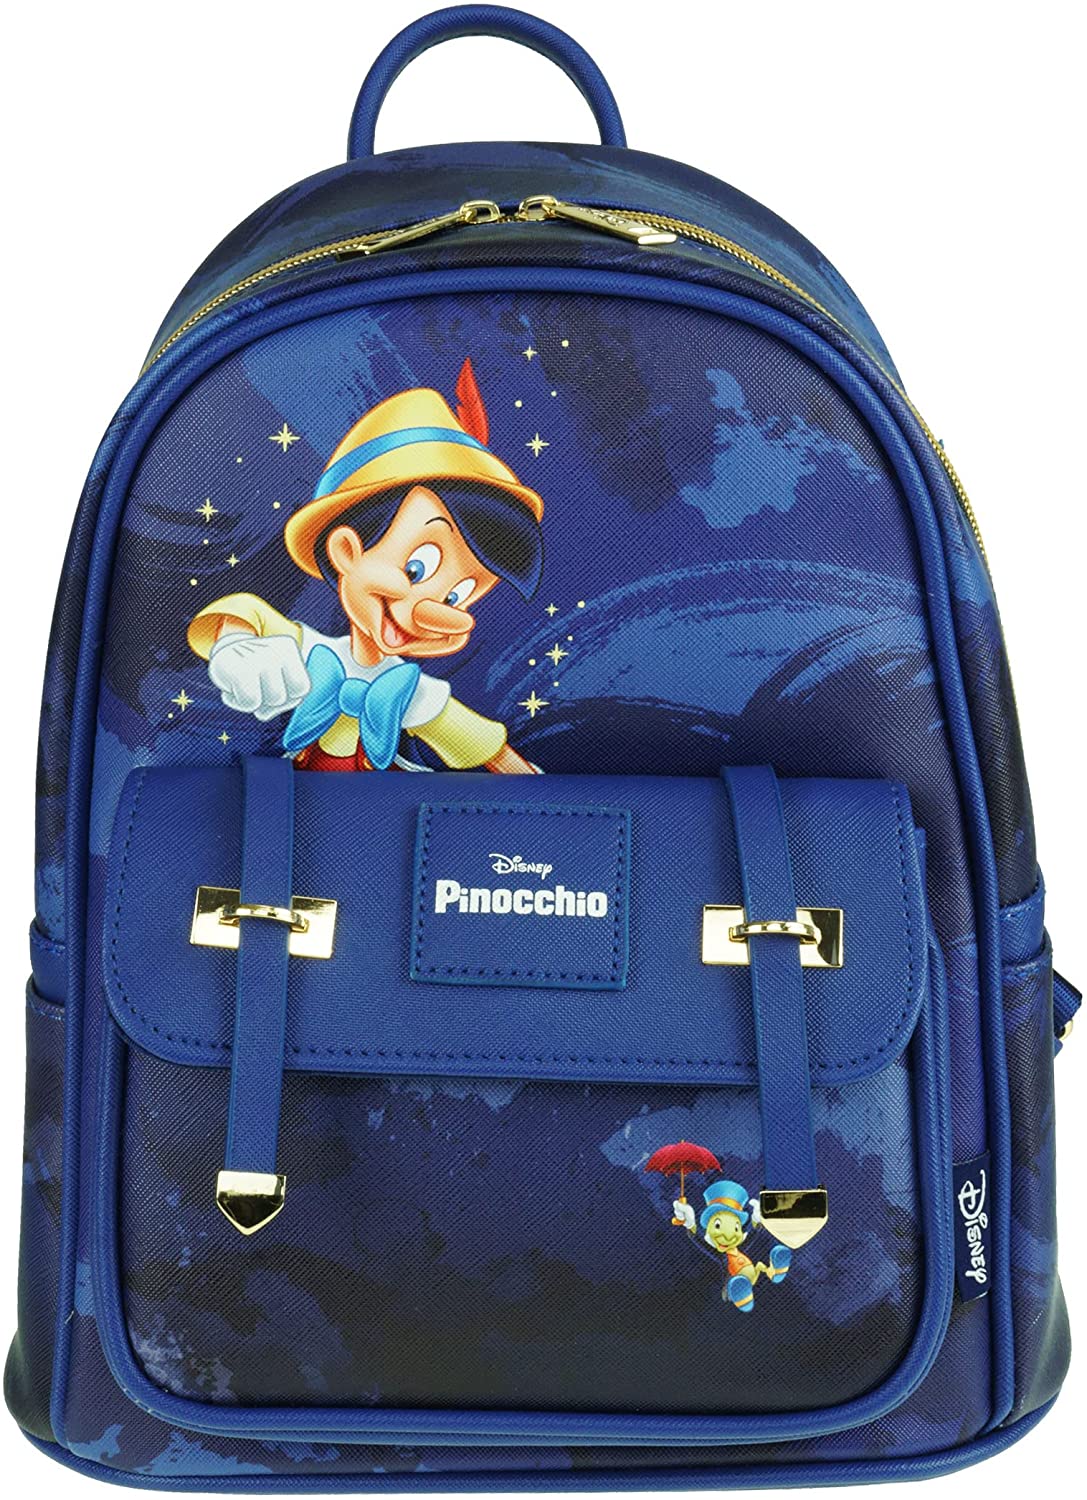 Pinocchio 11